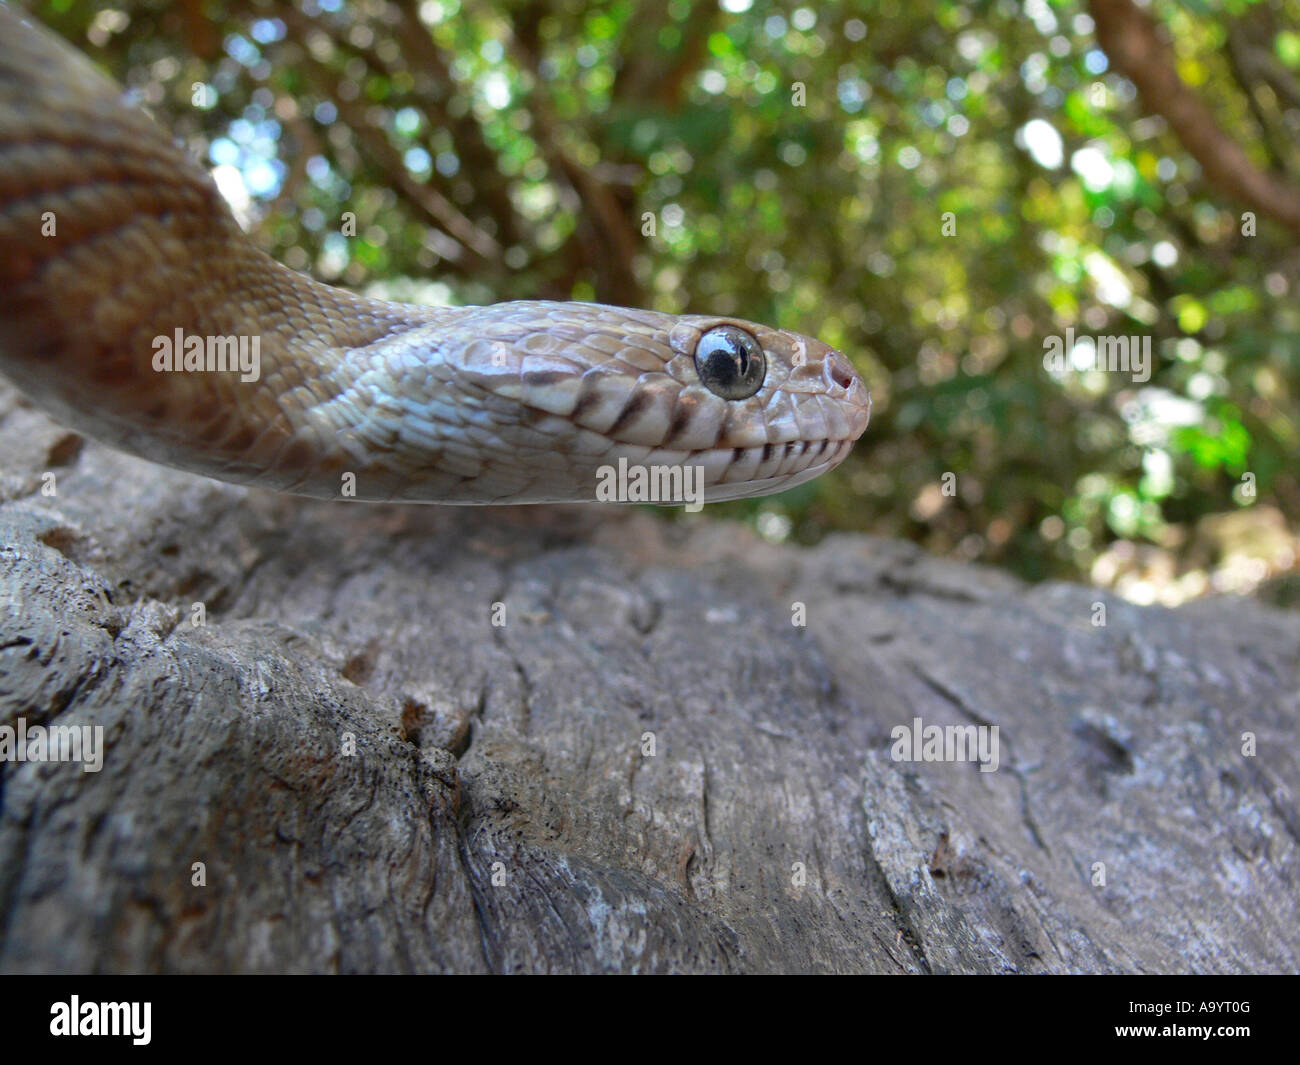 Le chat de FORSTEN serpent Boiga forsteni. Légèrement venimeux, commun. Un grand chat serpent qui passe la journée caché dans les arbres. Goa, Inde Banque D'Images